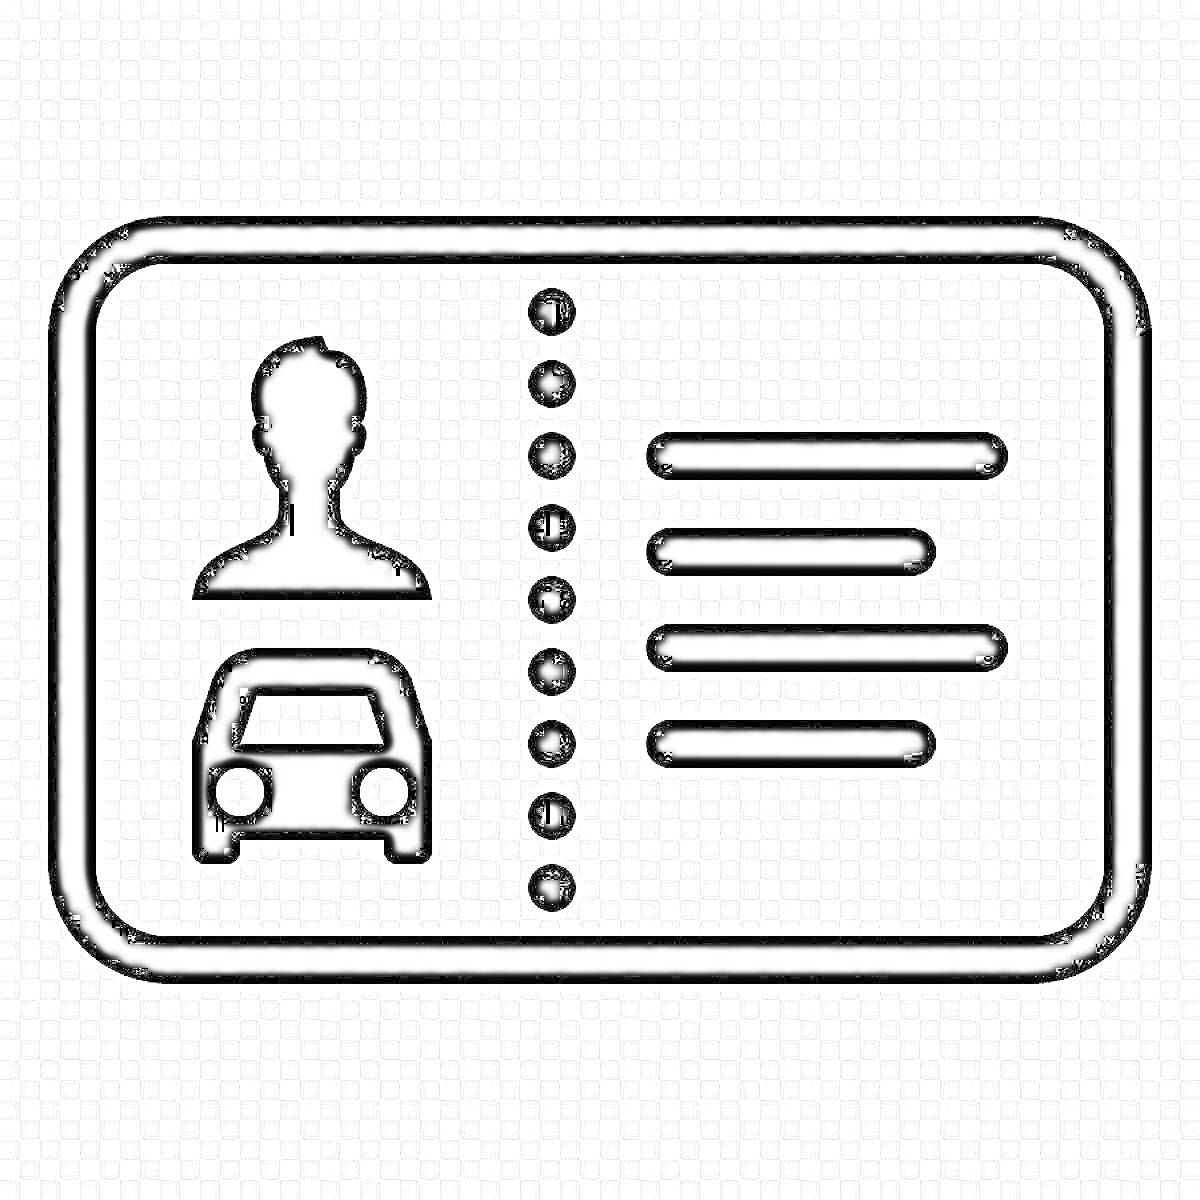 Раскраска водительское удостоверение с аватаром человека, изображением автомобиля и текстовой информацией